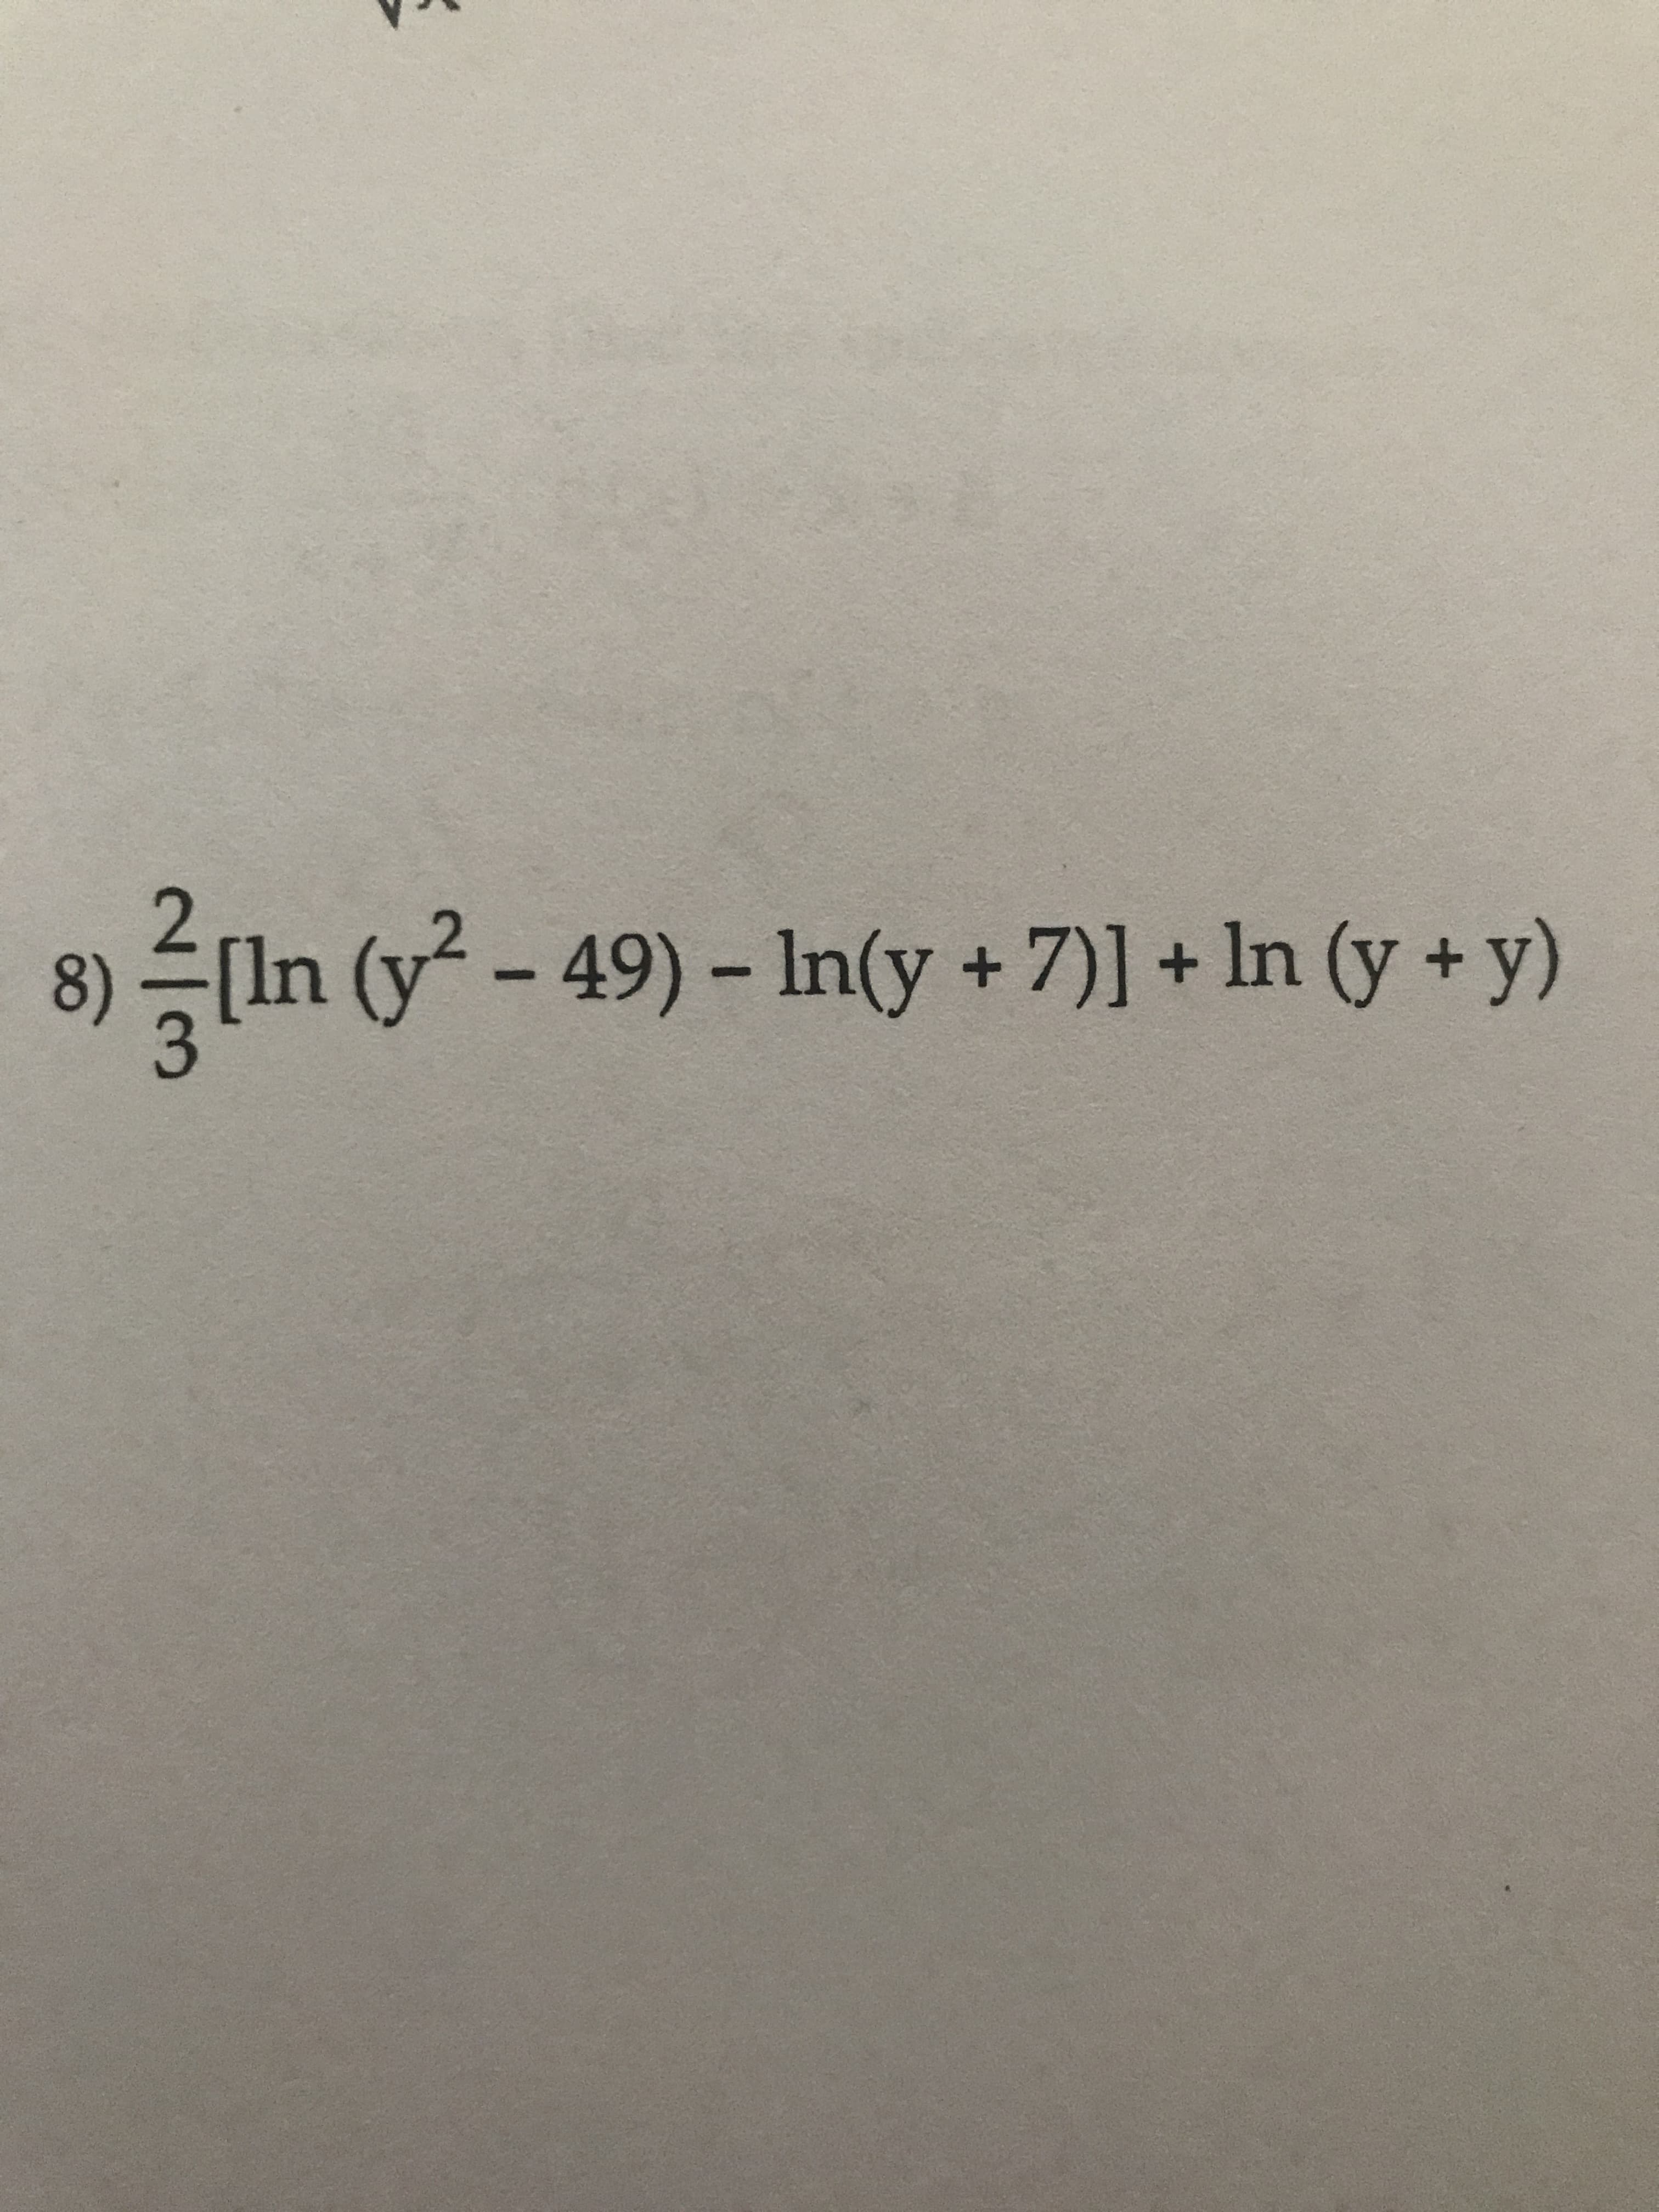 2,
8)
(In (y -
49)-In(y+7)] + In (y + y)
